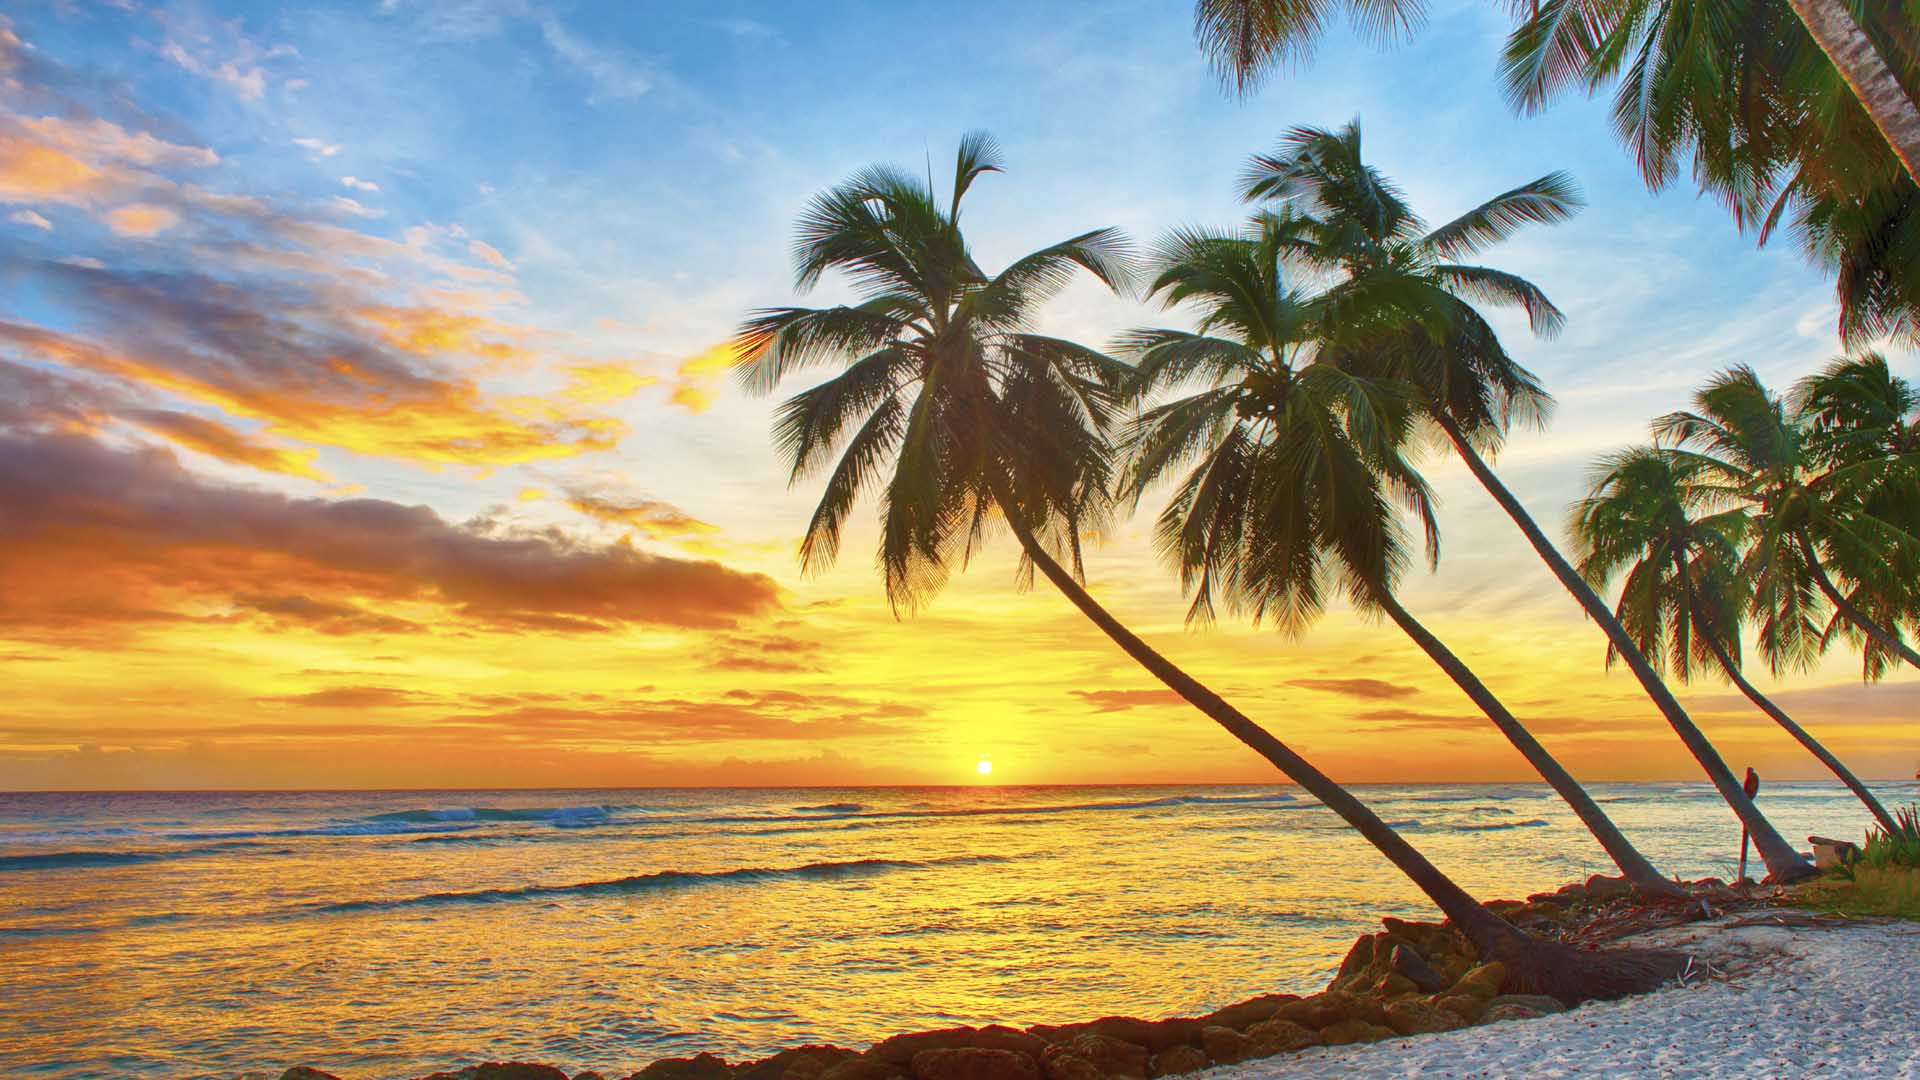 Según el sitio especializado TripAdvidor las playas caribeñas siguen liderando los rankings como los mejores sitios donde vacacionar